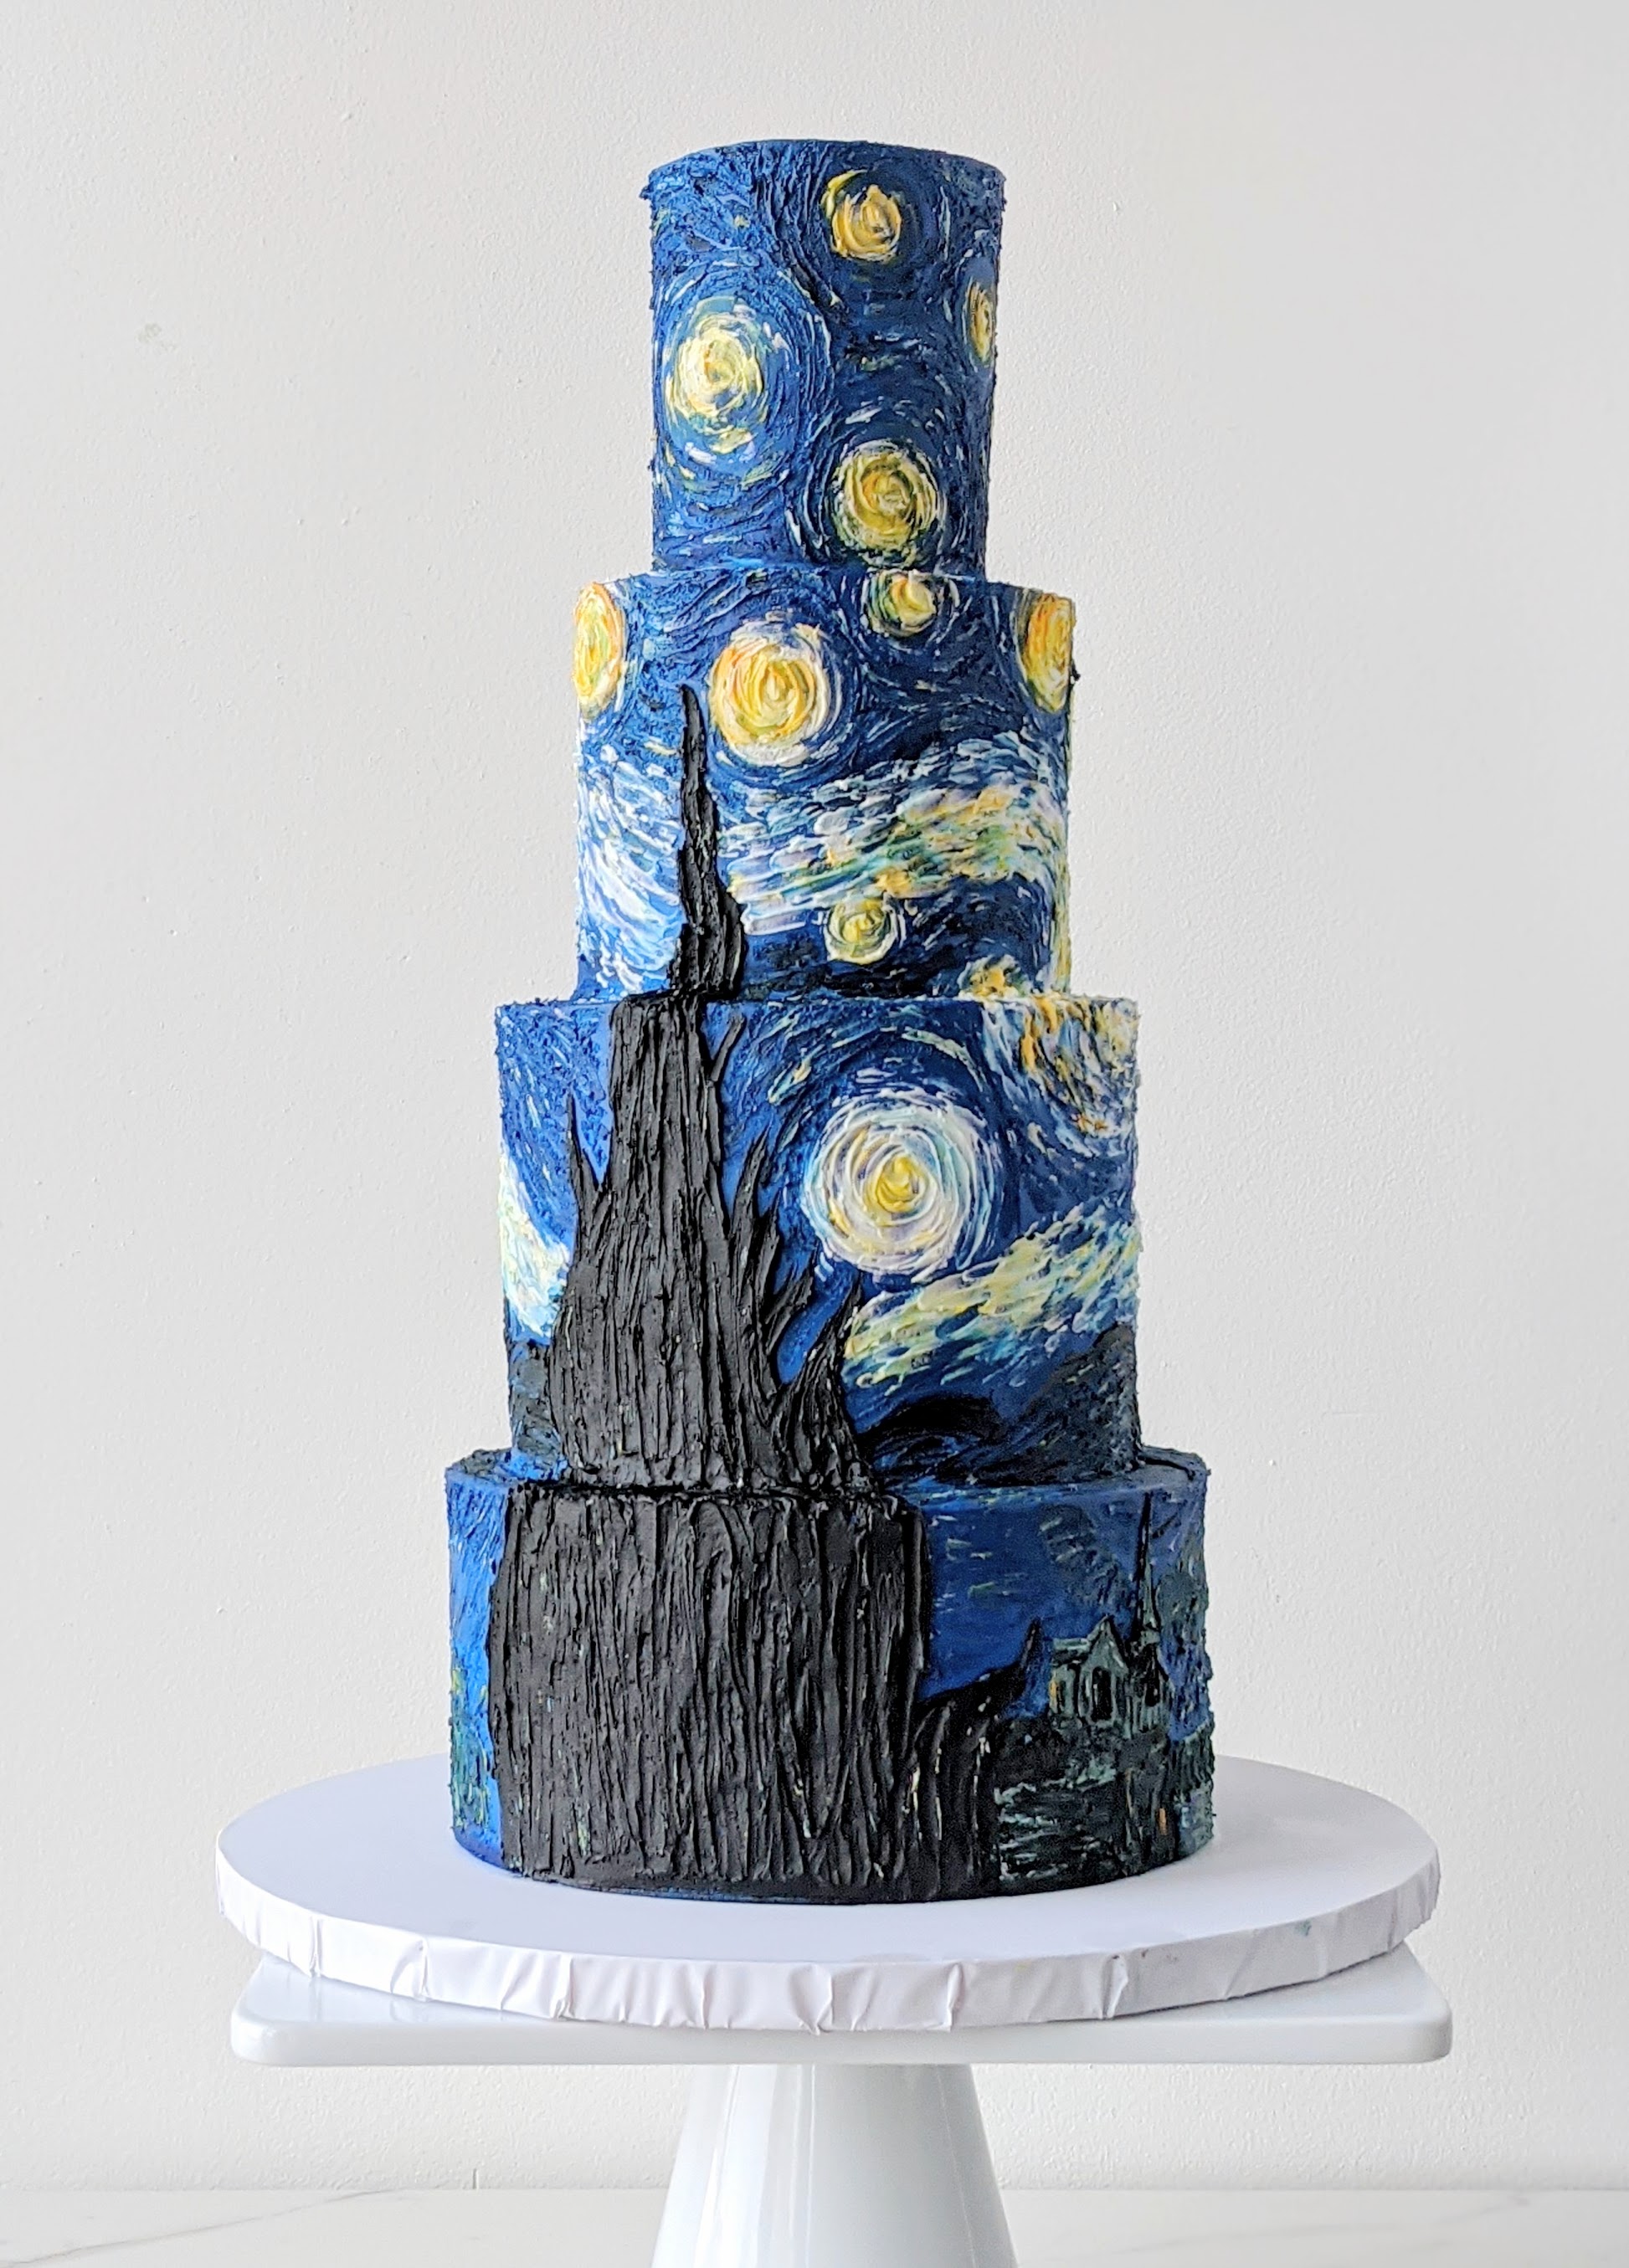 Starry Night Panda Express Cake - Grinder – 10AM CAKE